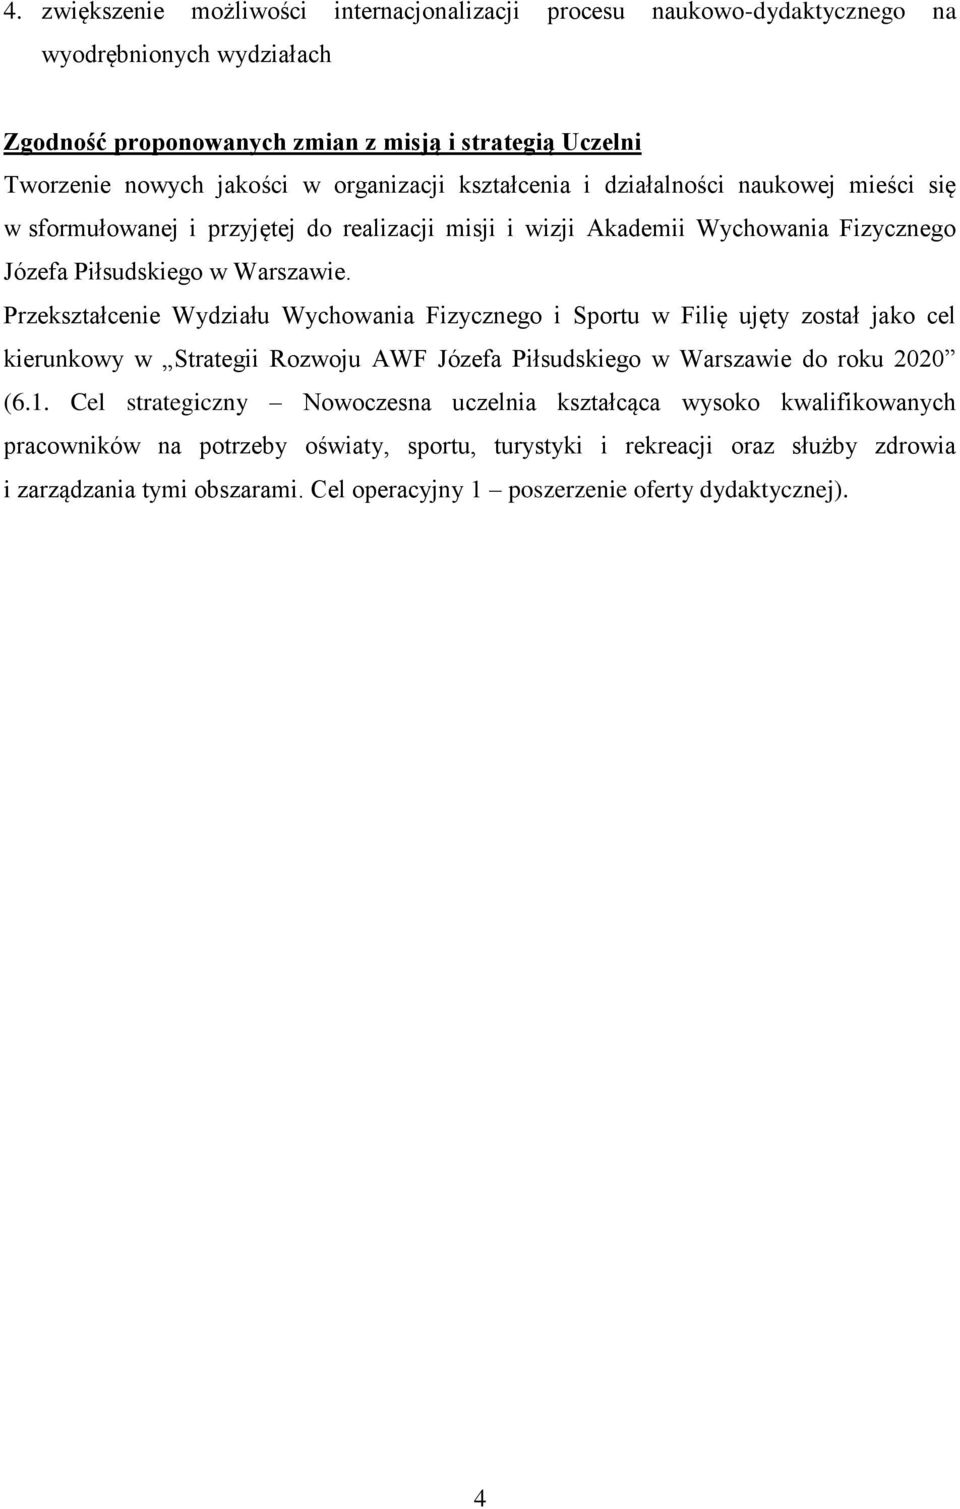 Przekształcenie Wydziału Wychowania Fizycznego i Sportu w Filię ujęty został jako cel kierunkowy w Strategii Rozwoju AWF Józefa Piłsudskiego w Warszawie do roku 2020 (6.1.